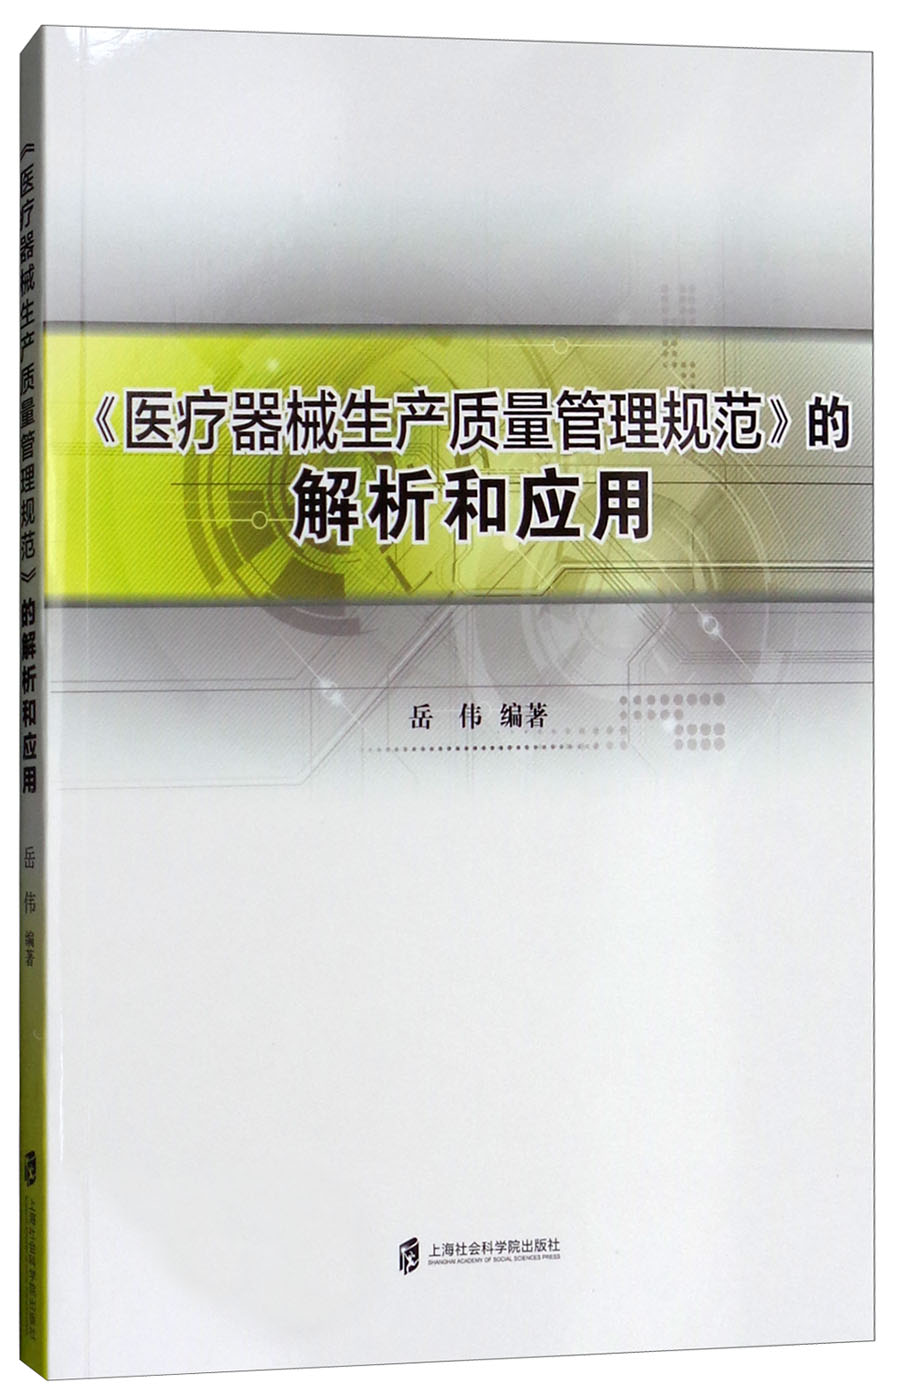 《医疗器械生产质量管理规范》的解析和应用岳伟9787552009309 pdf格式下载